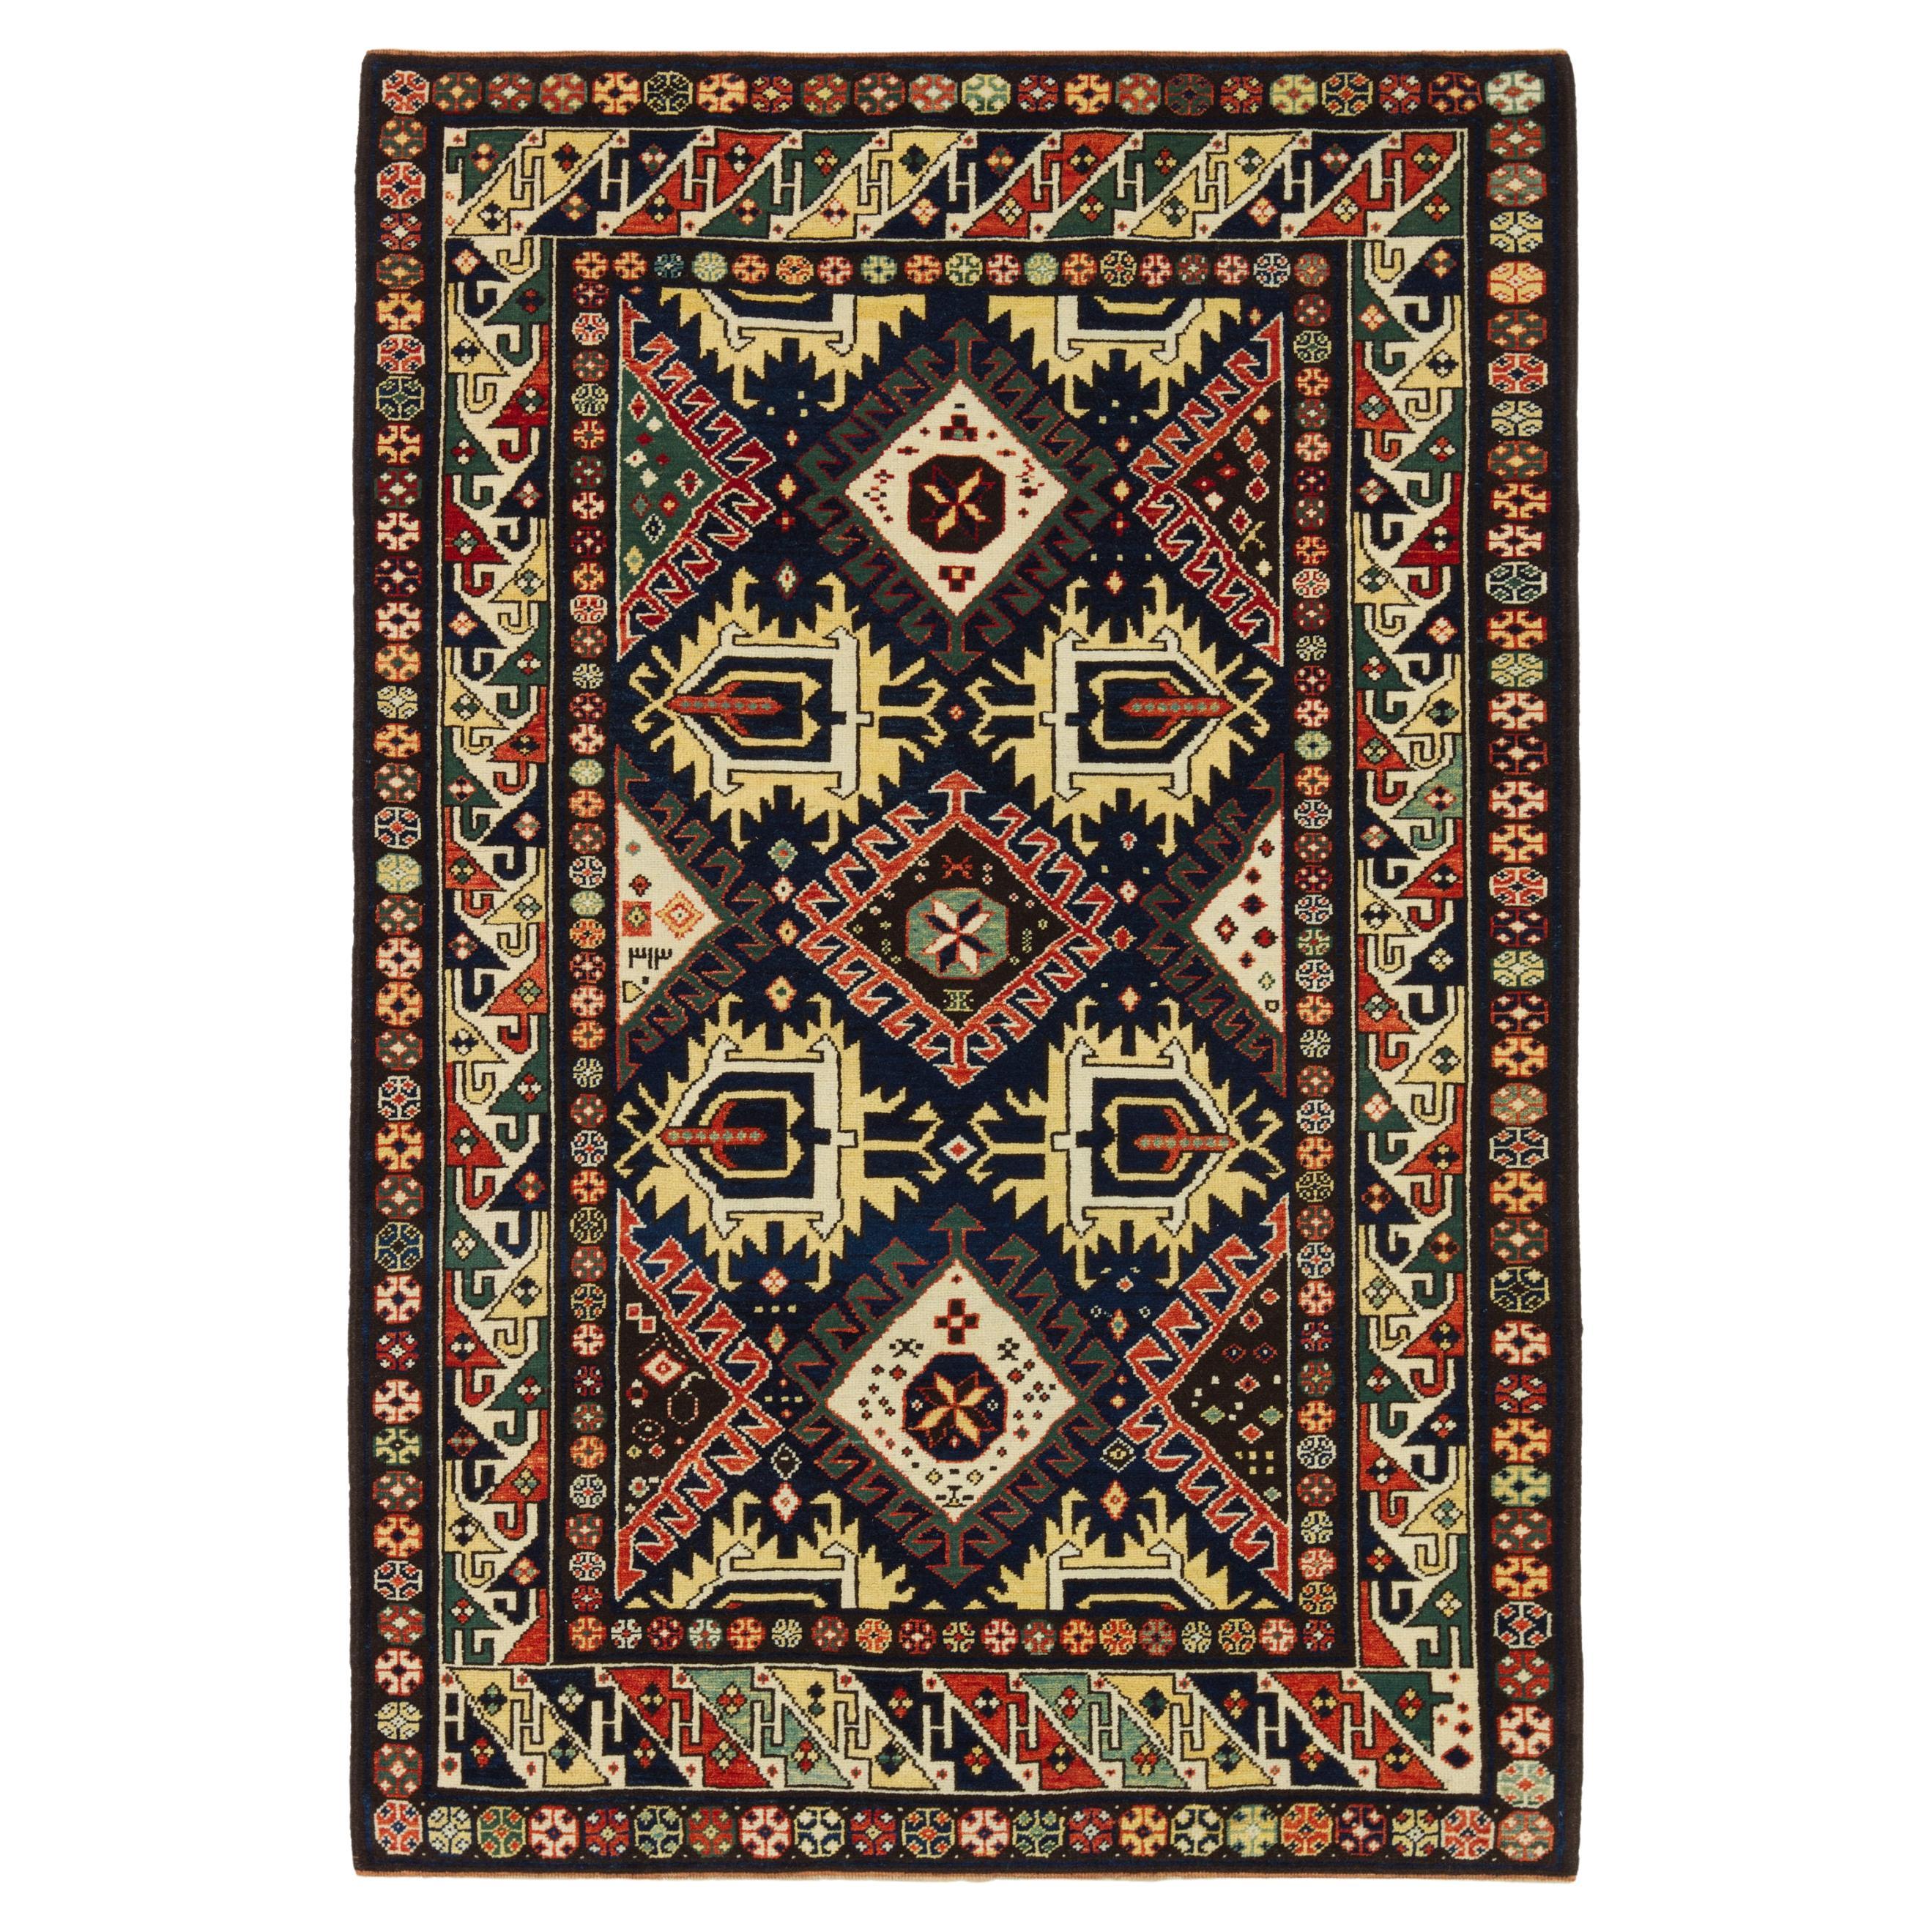 Ararat Rugs Derbend Kazak Rug, 19th C. Caucasian Revival Carpet Natural Dyed